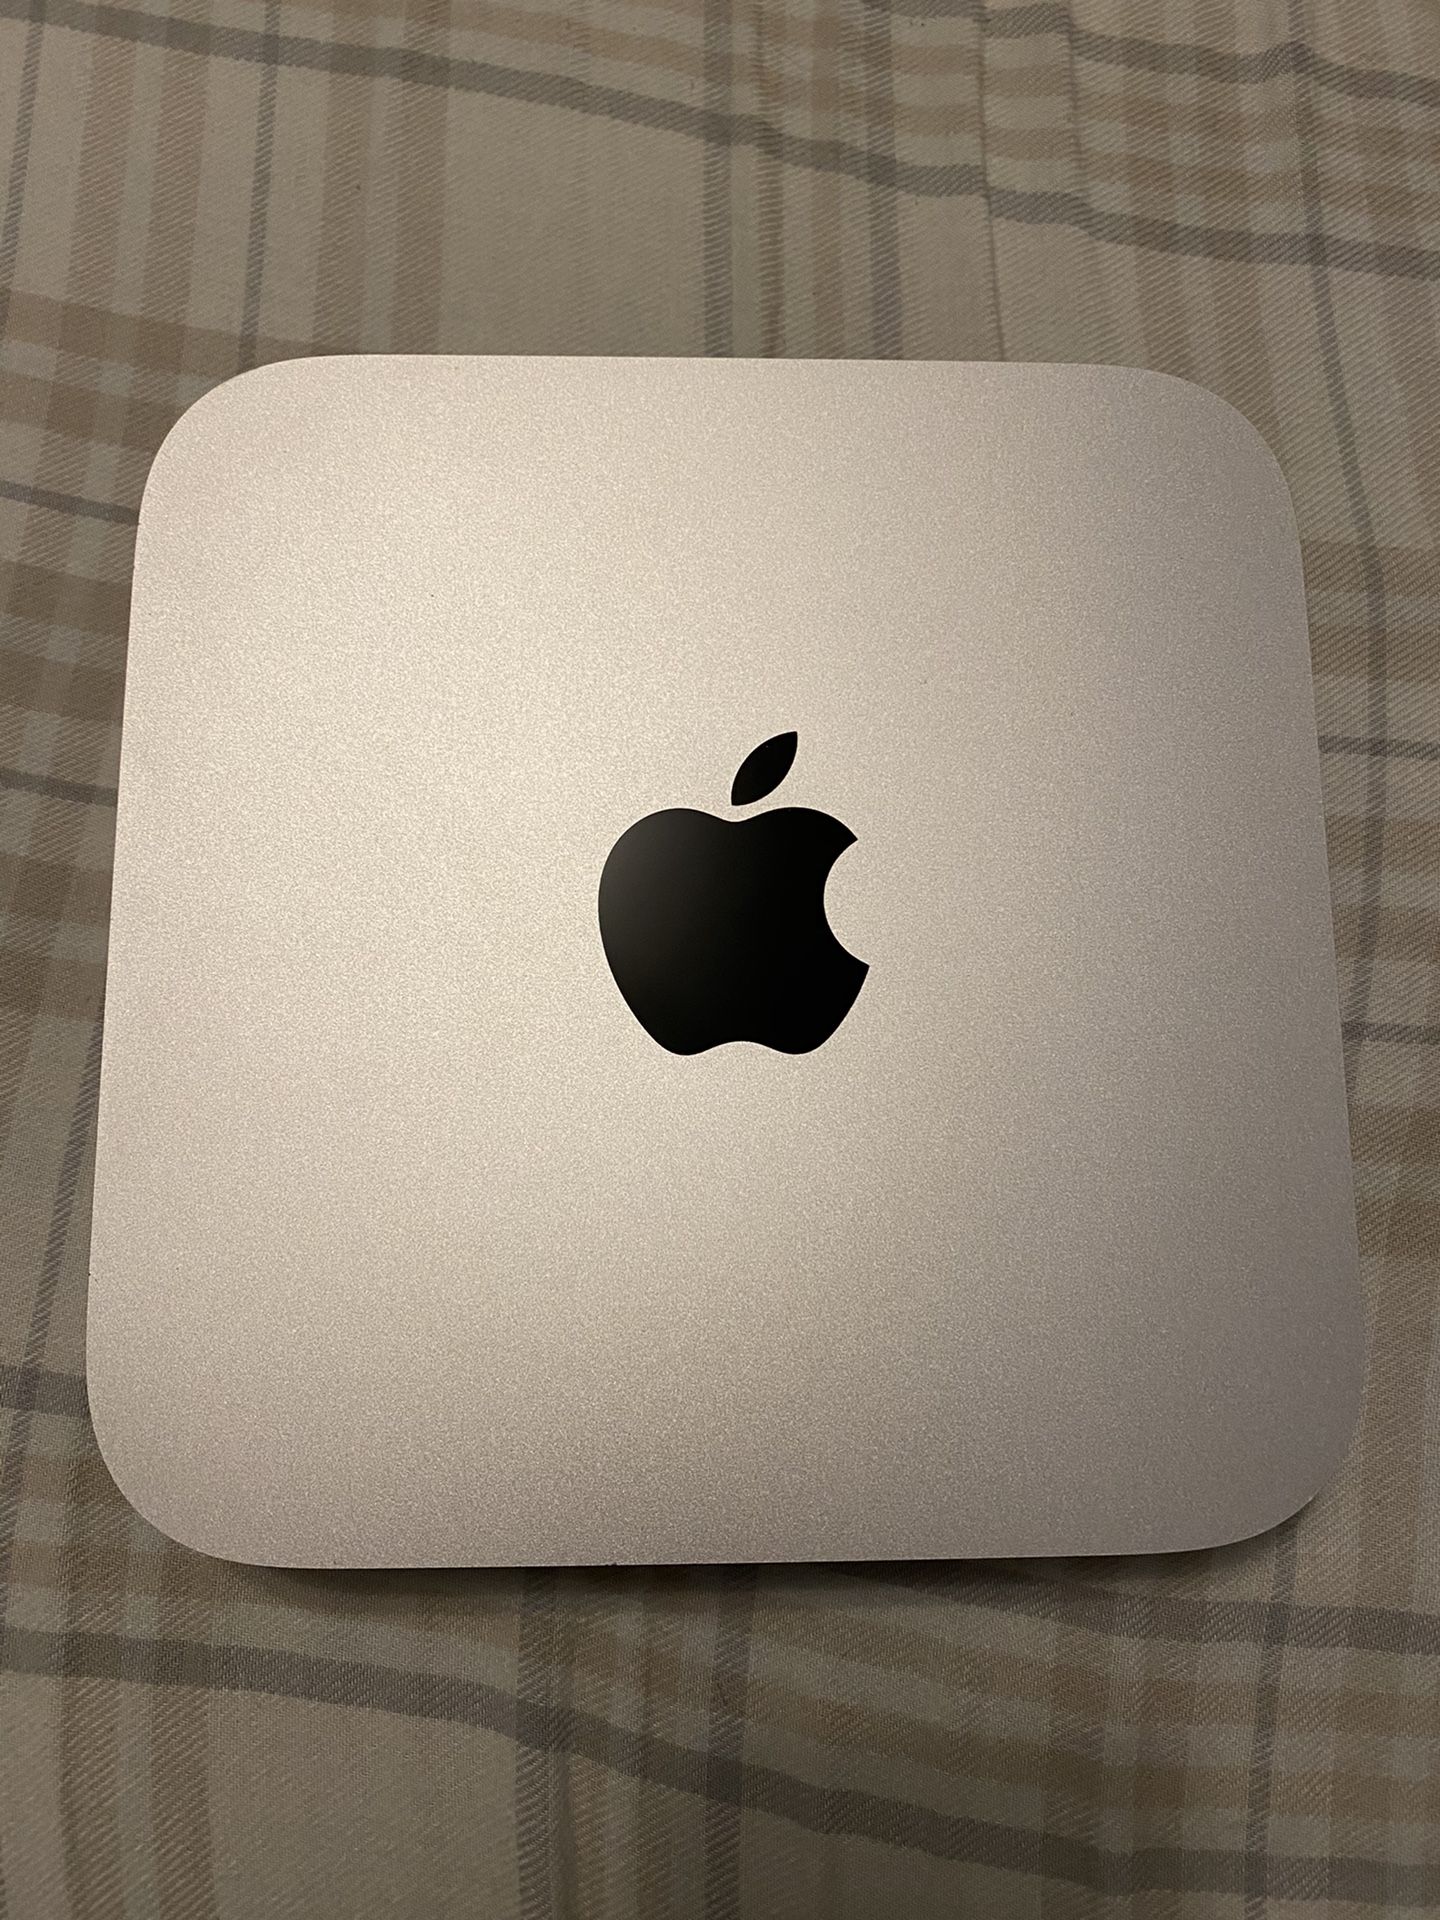 2012 Mac Mini